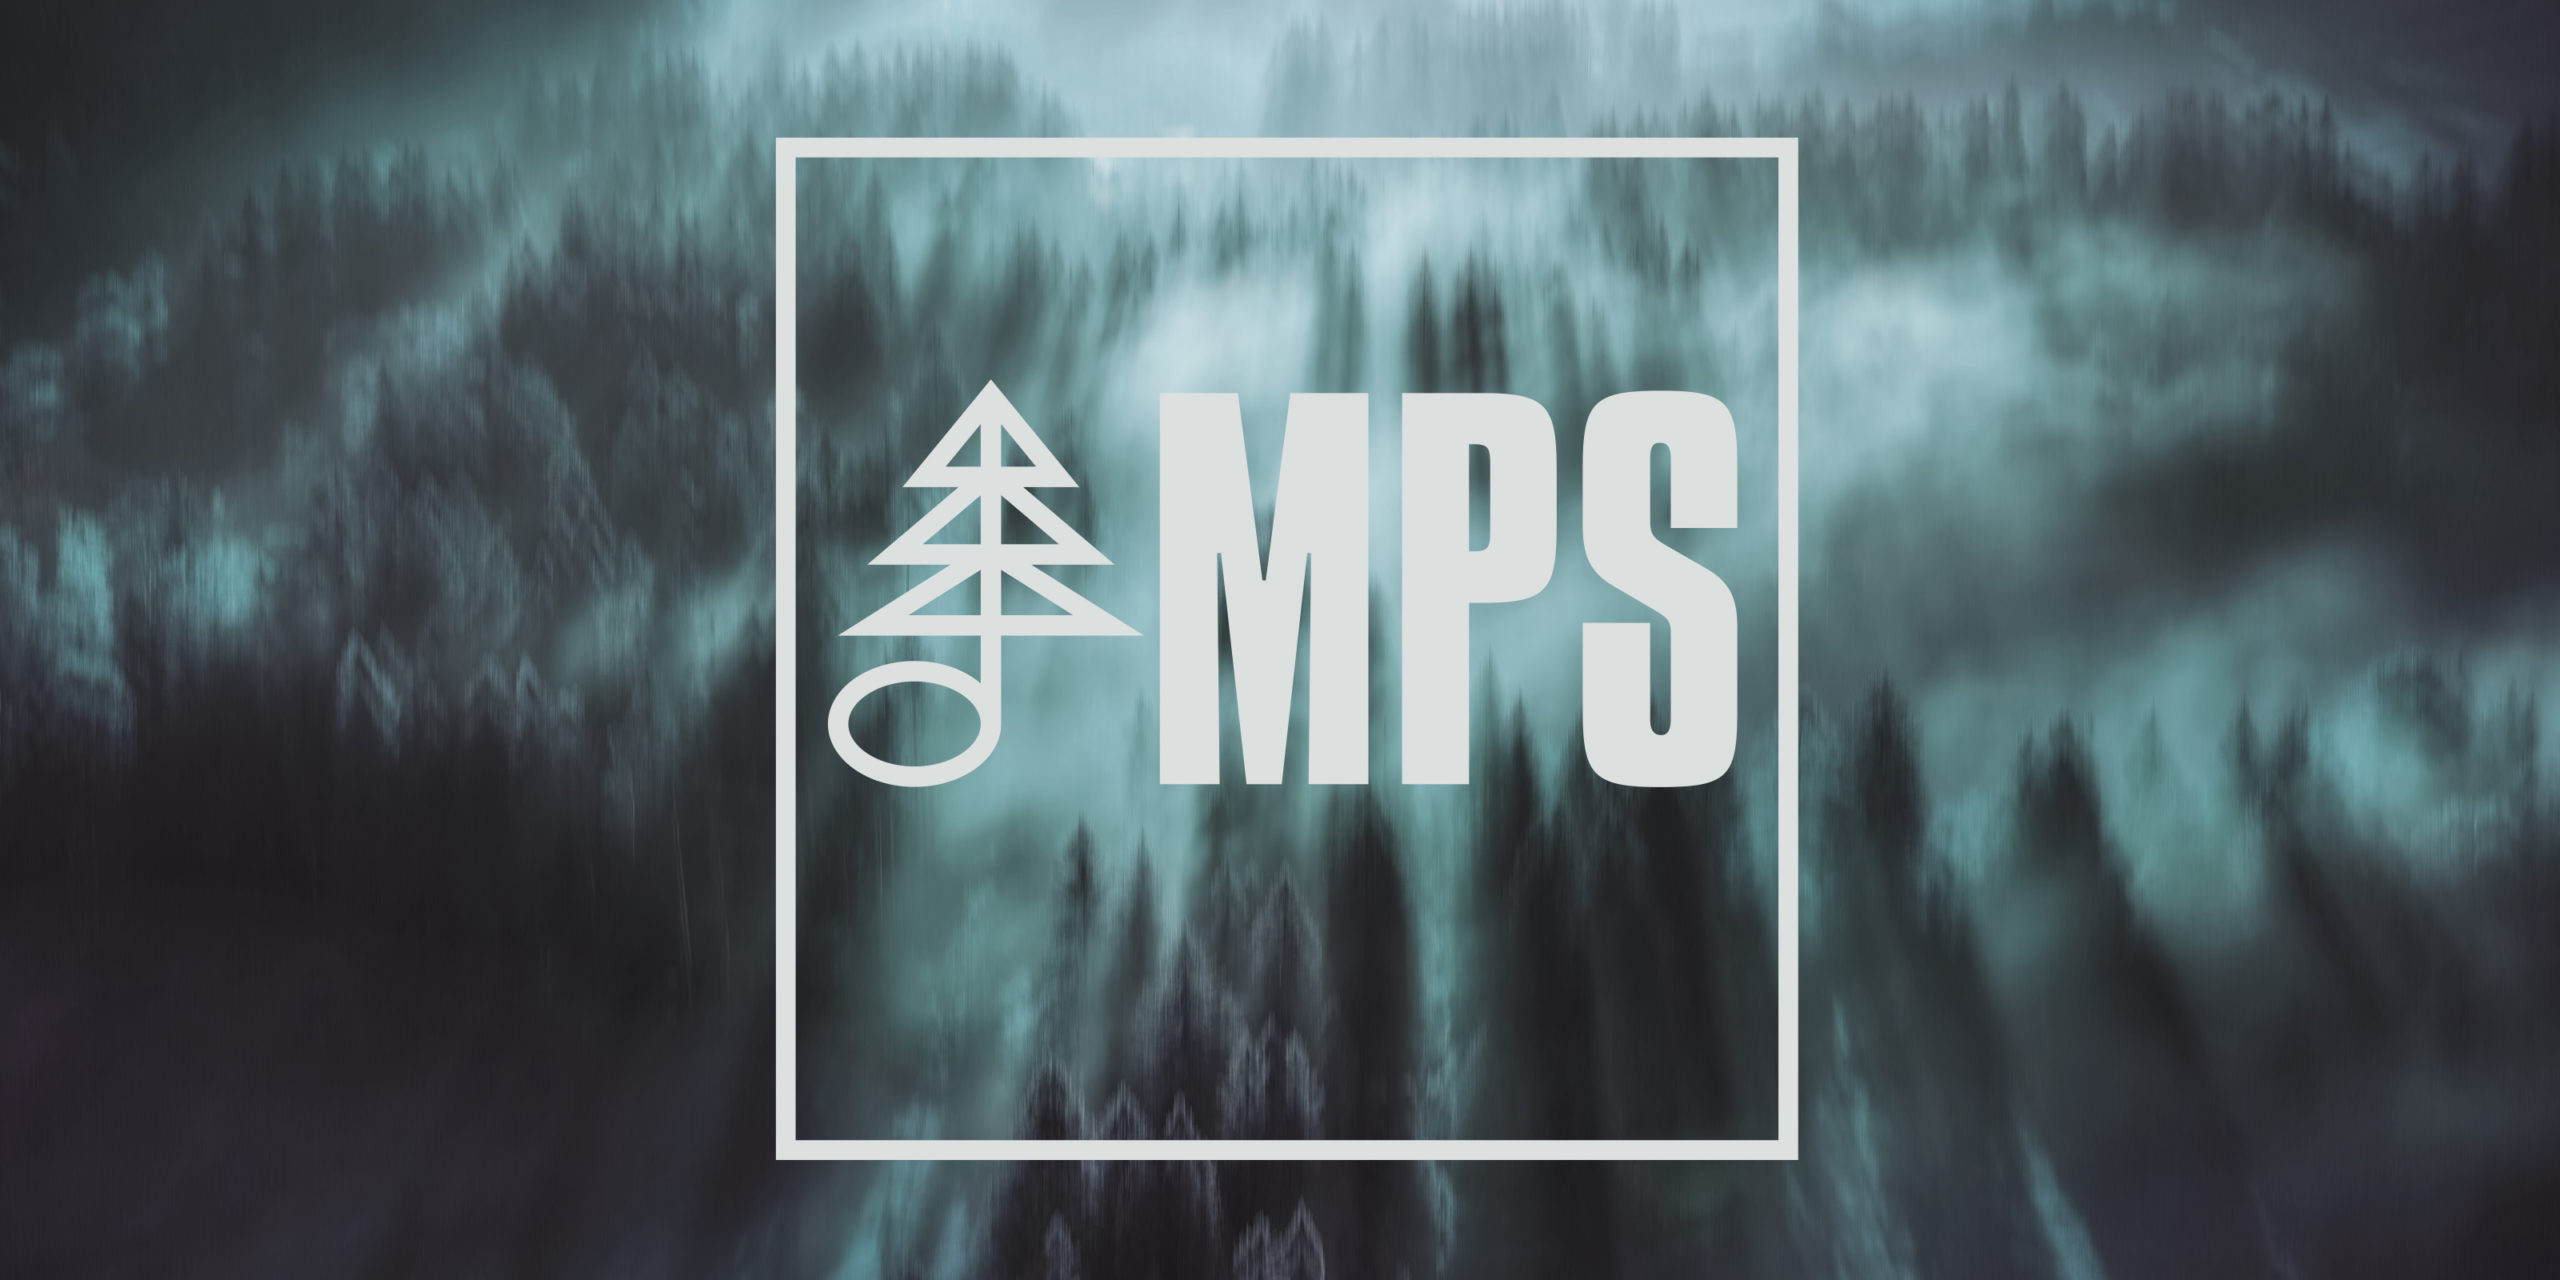 www.mps-music.com